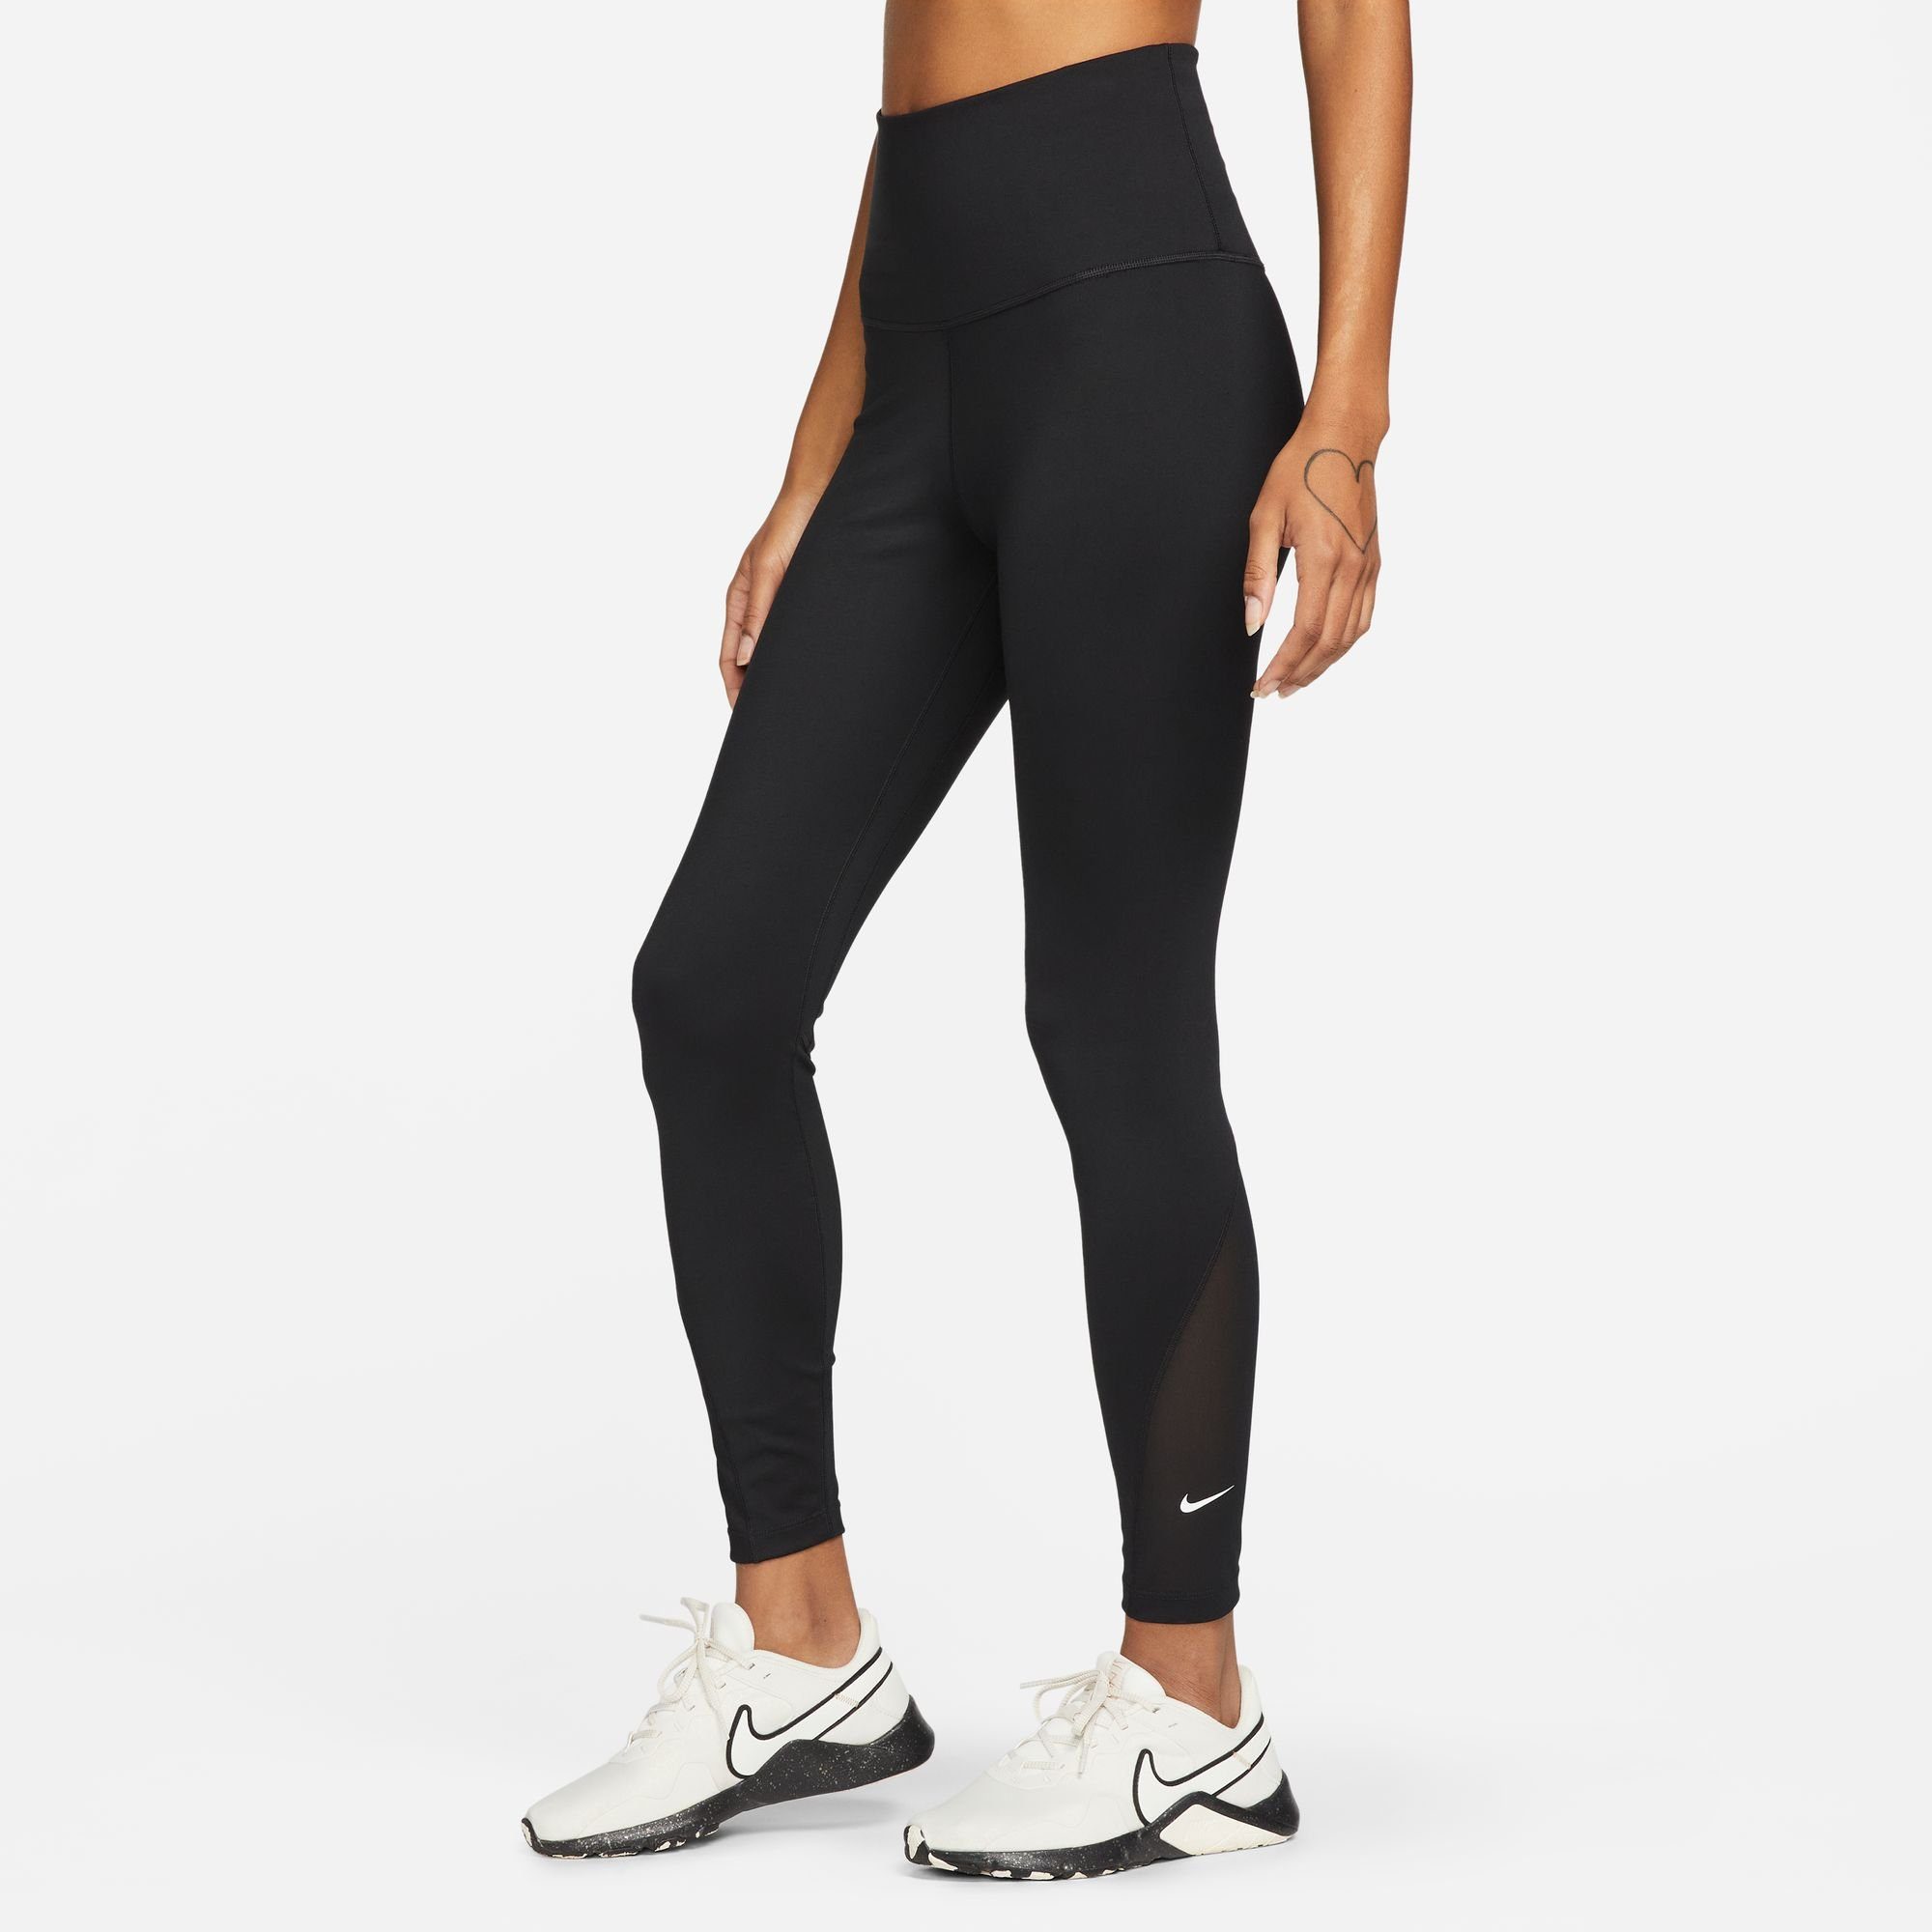 Nike / ONE LEGGINGS WOMEN'S Trainingstights HIGH-WAISTED BLACK/WHITE